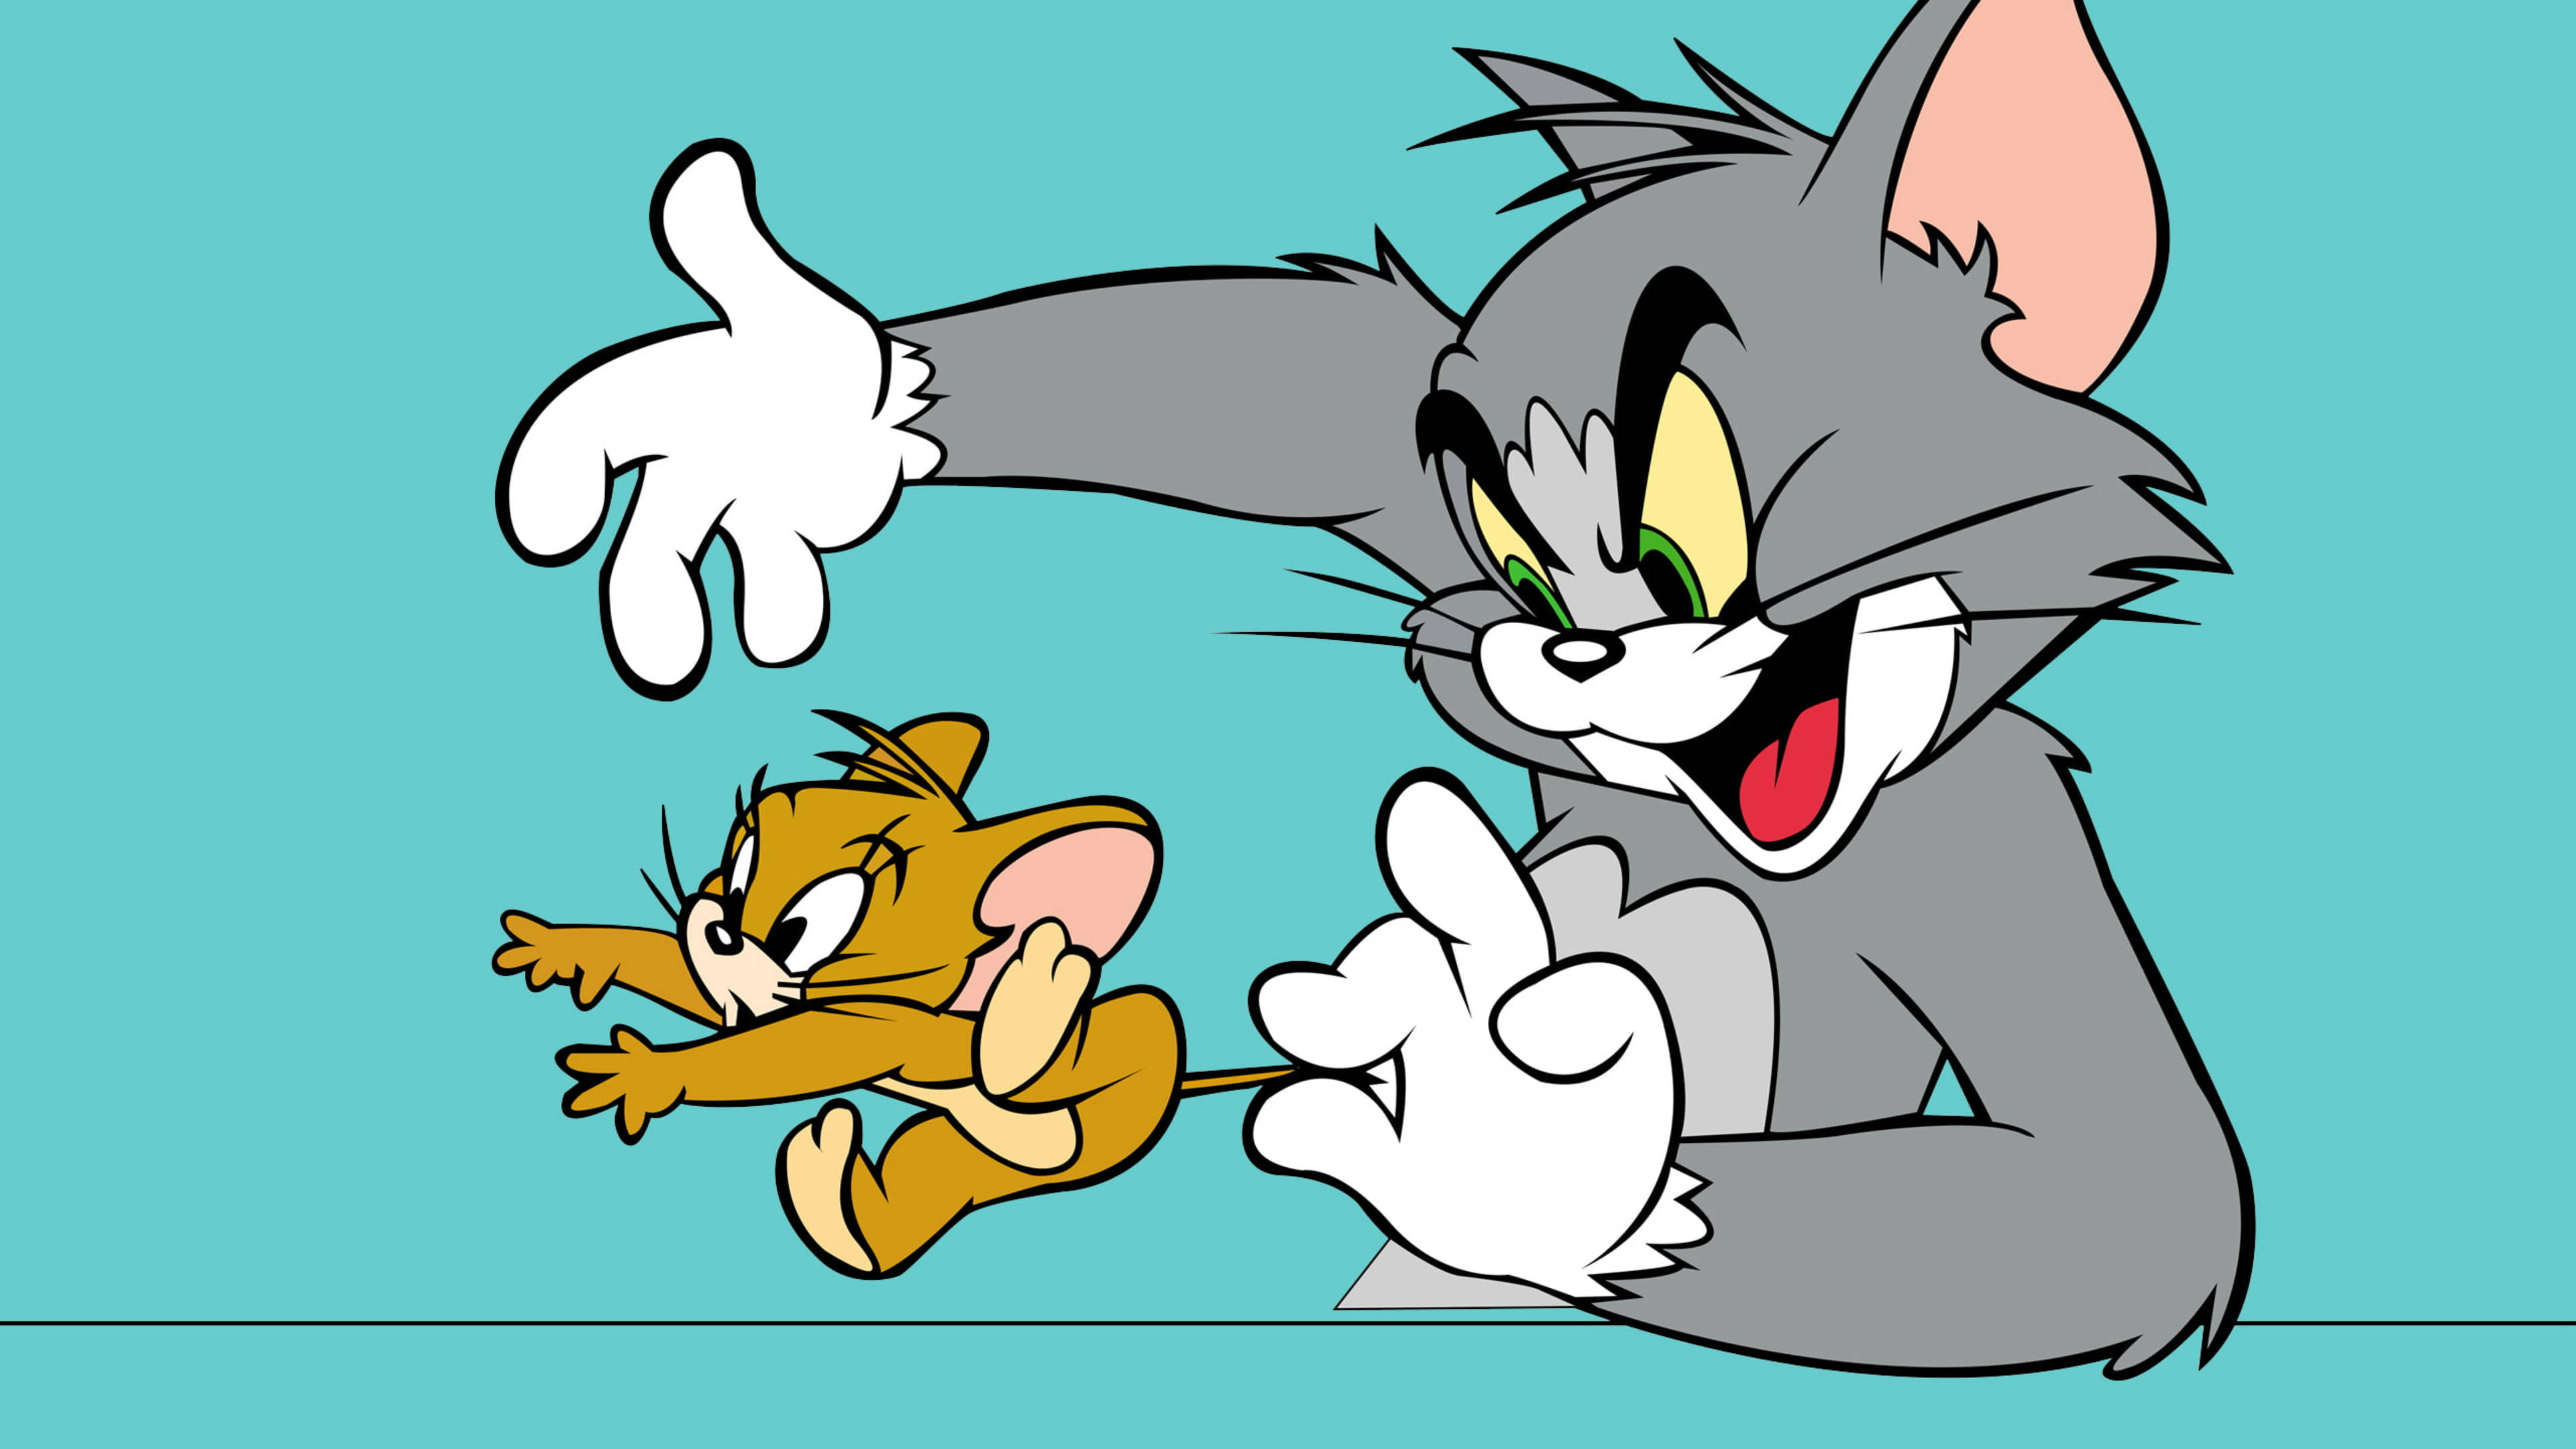 Jerry том и джерри. Tom and Jerry. Том ва Джерри. Том и Джерри картинки. Обои том и Джерри.